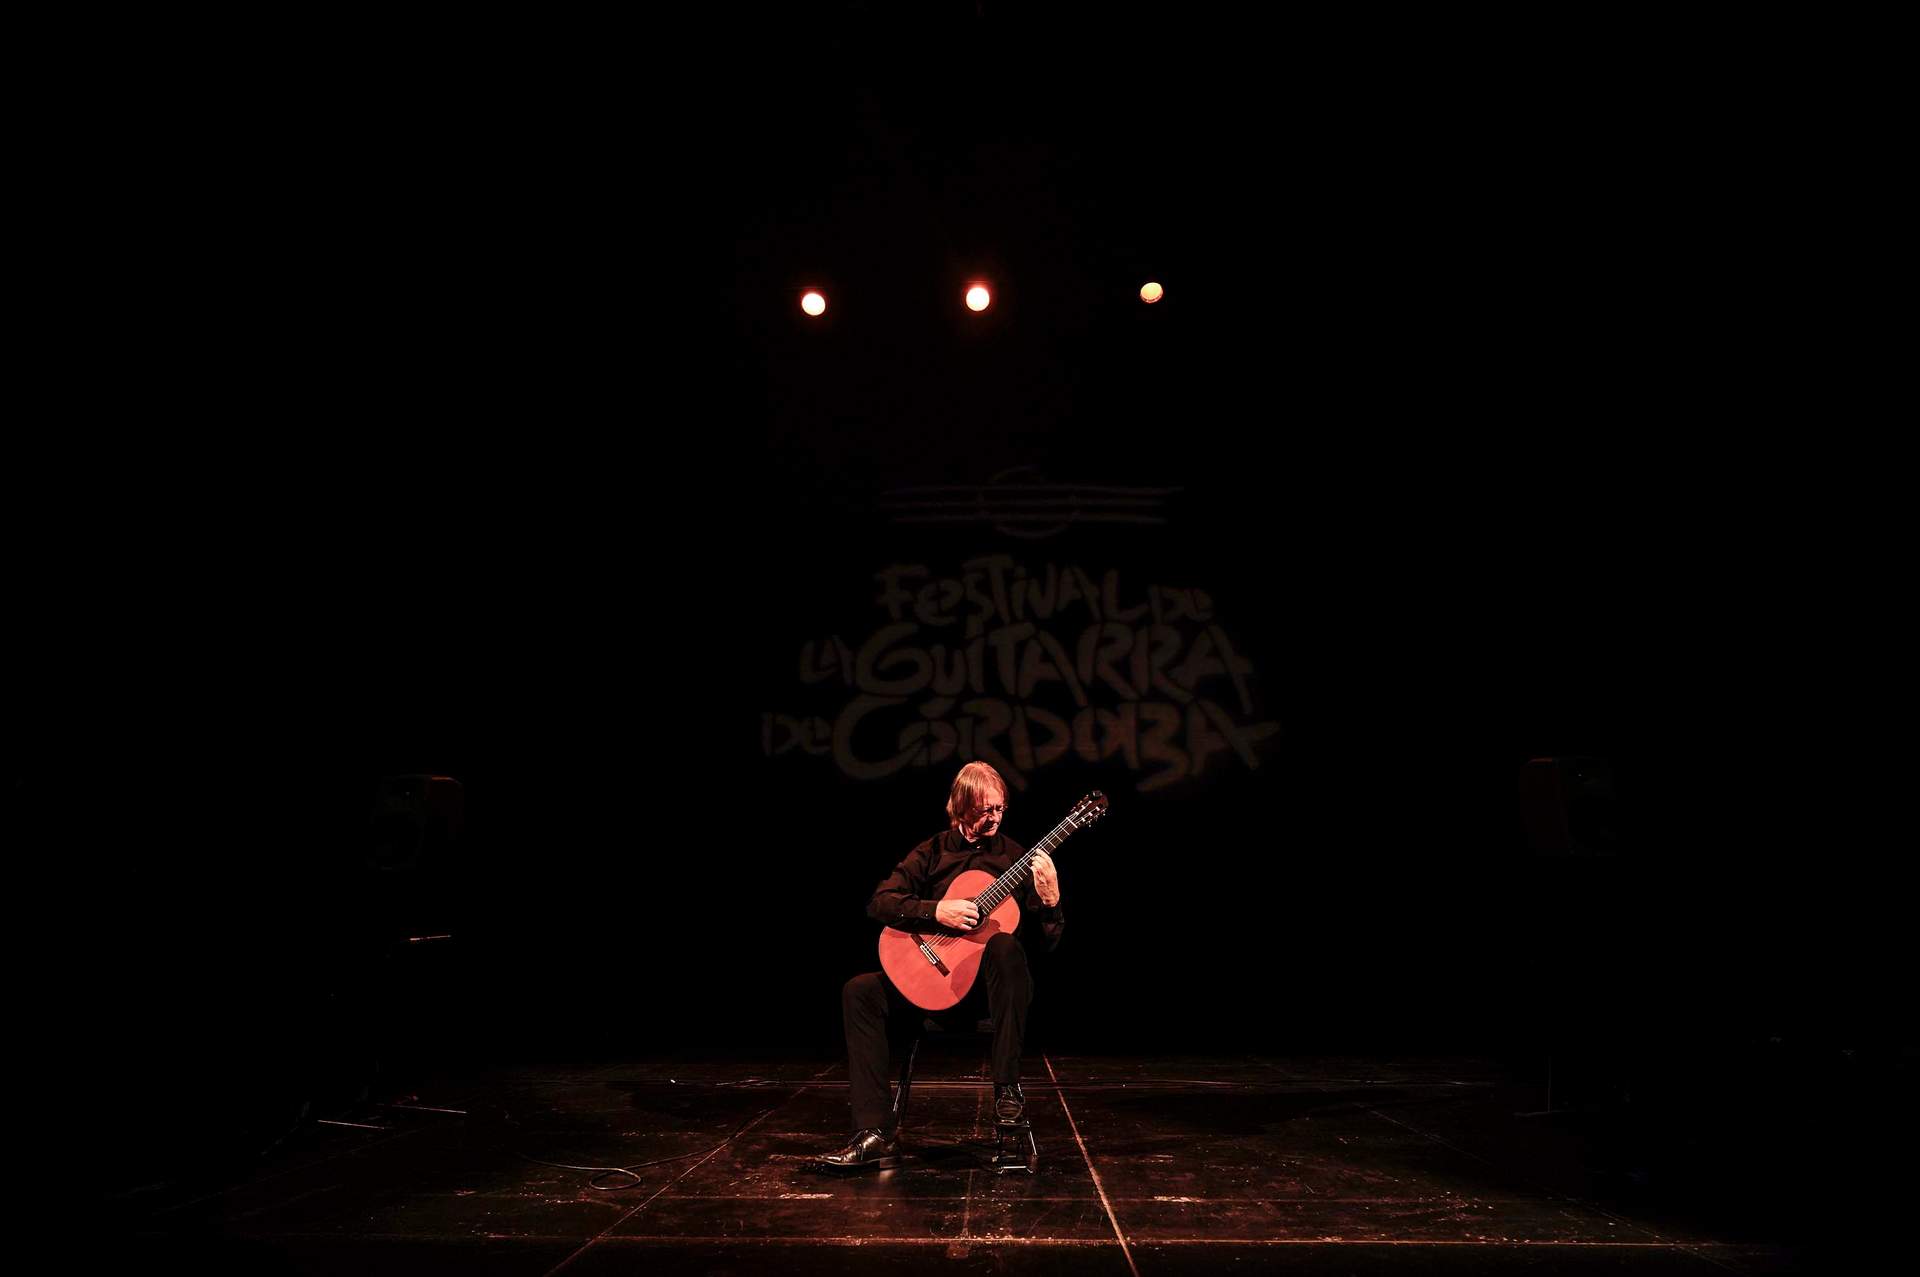 GALERÍA: Festival de la Guitarra de Córdoba: Coque Malla hace vibrar al Gran Teatro con un concierto memorable